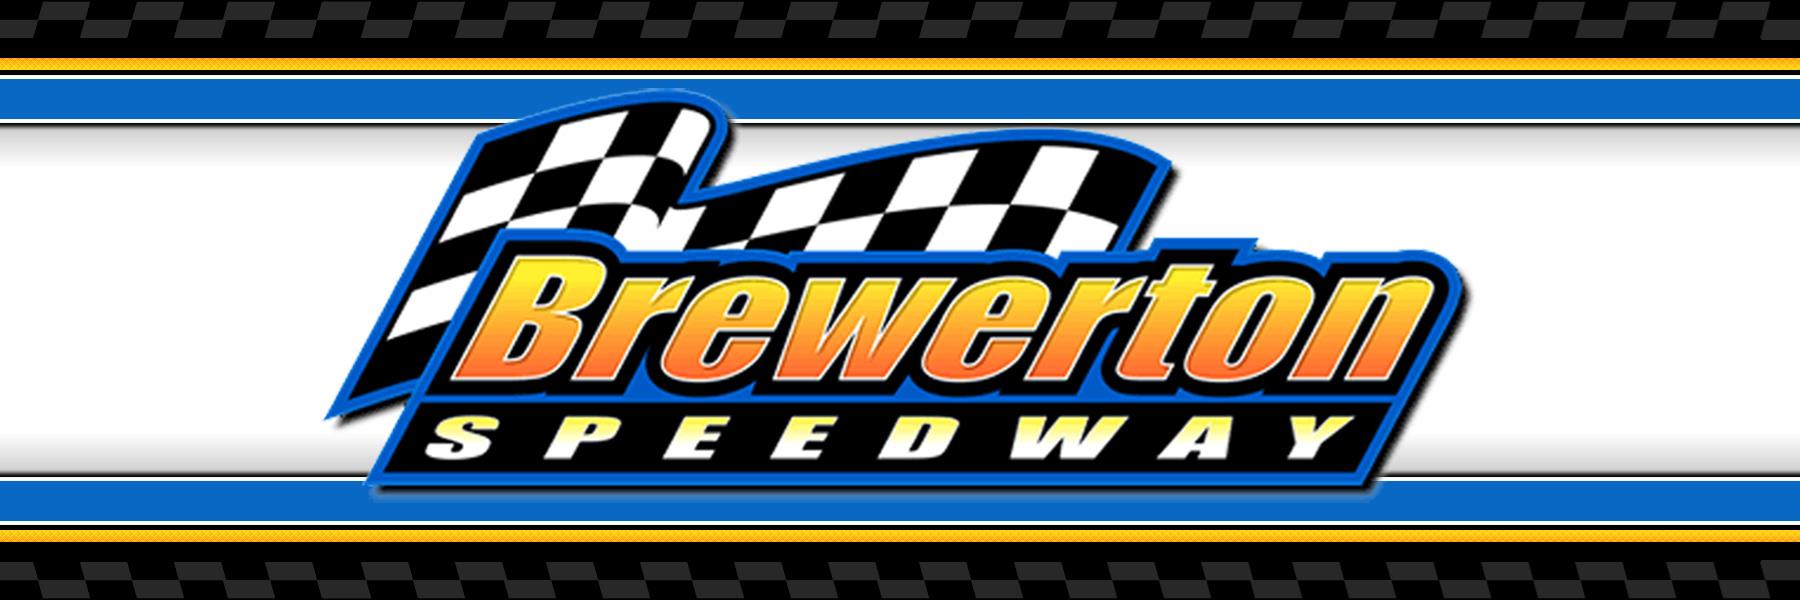 9/2/2022 - Brewerton Speedway